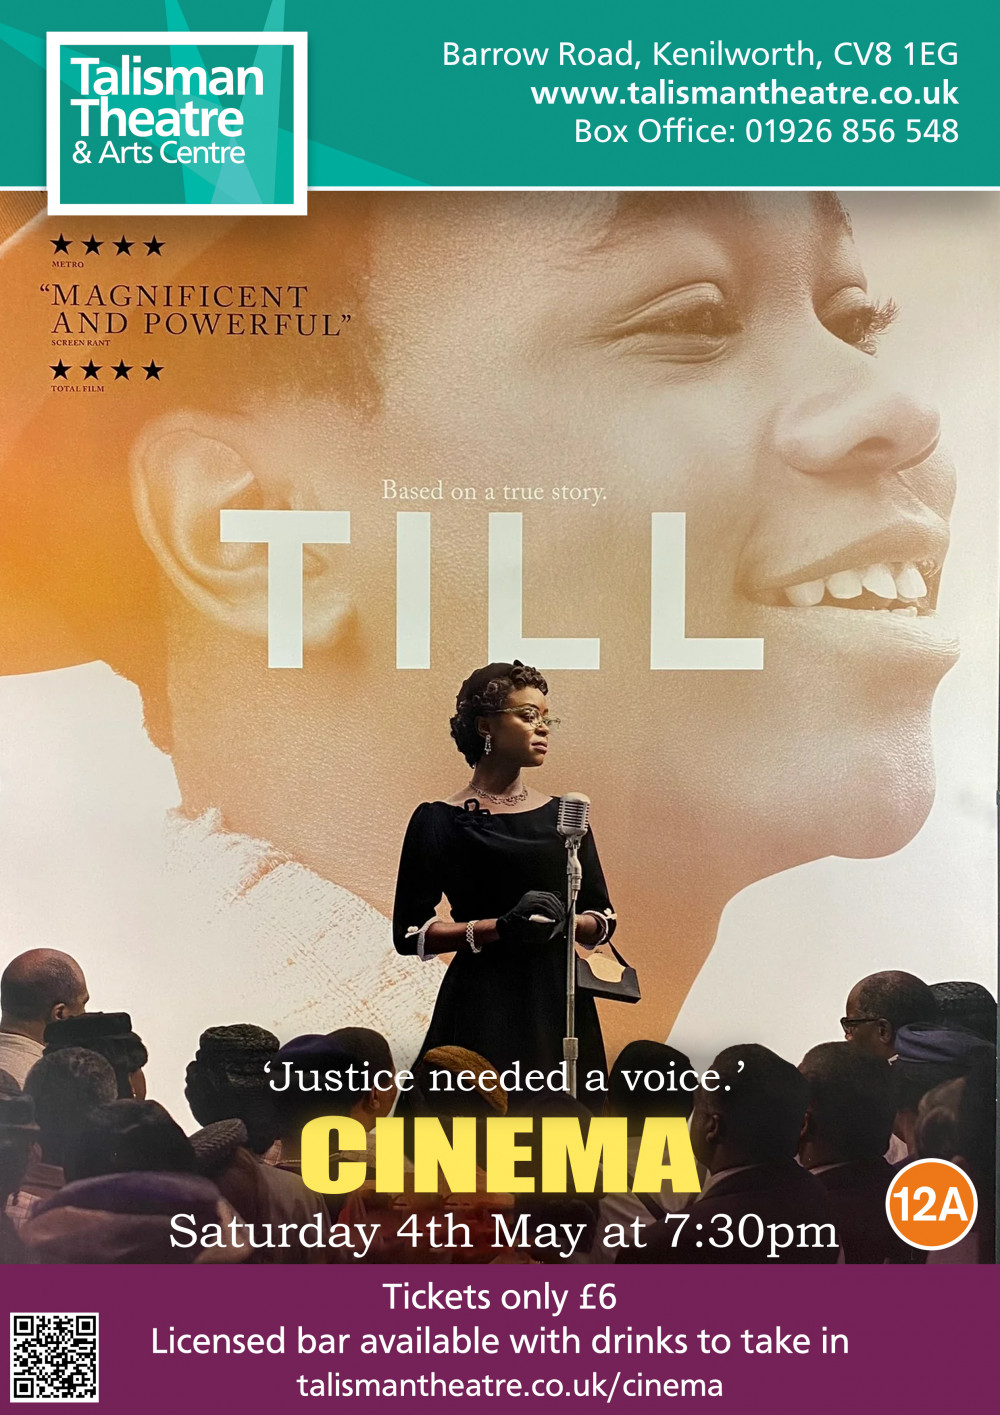 Cinema - 'Till' at Talisman Theatre